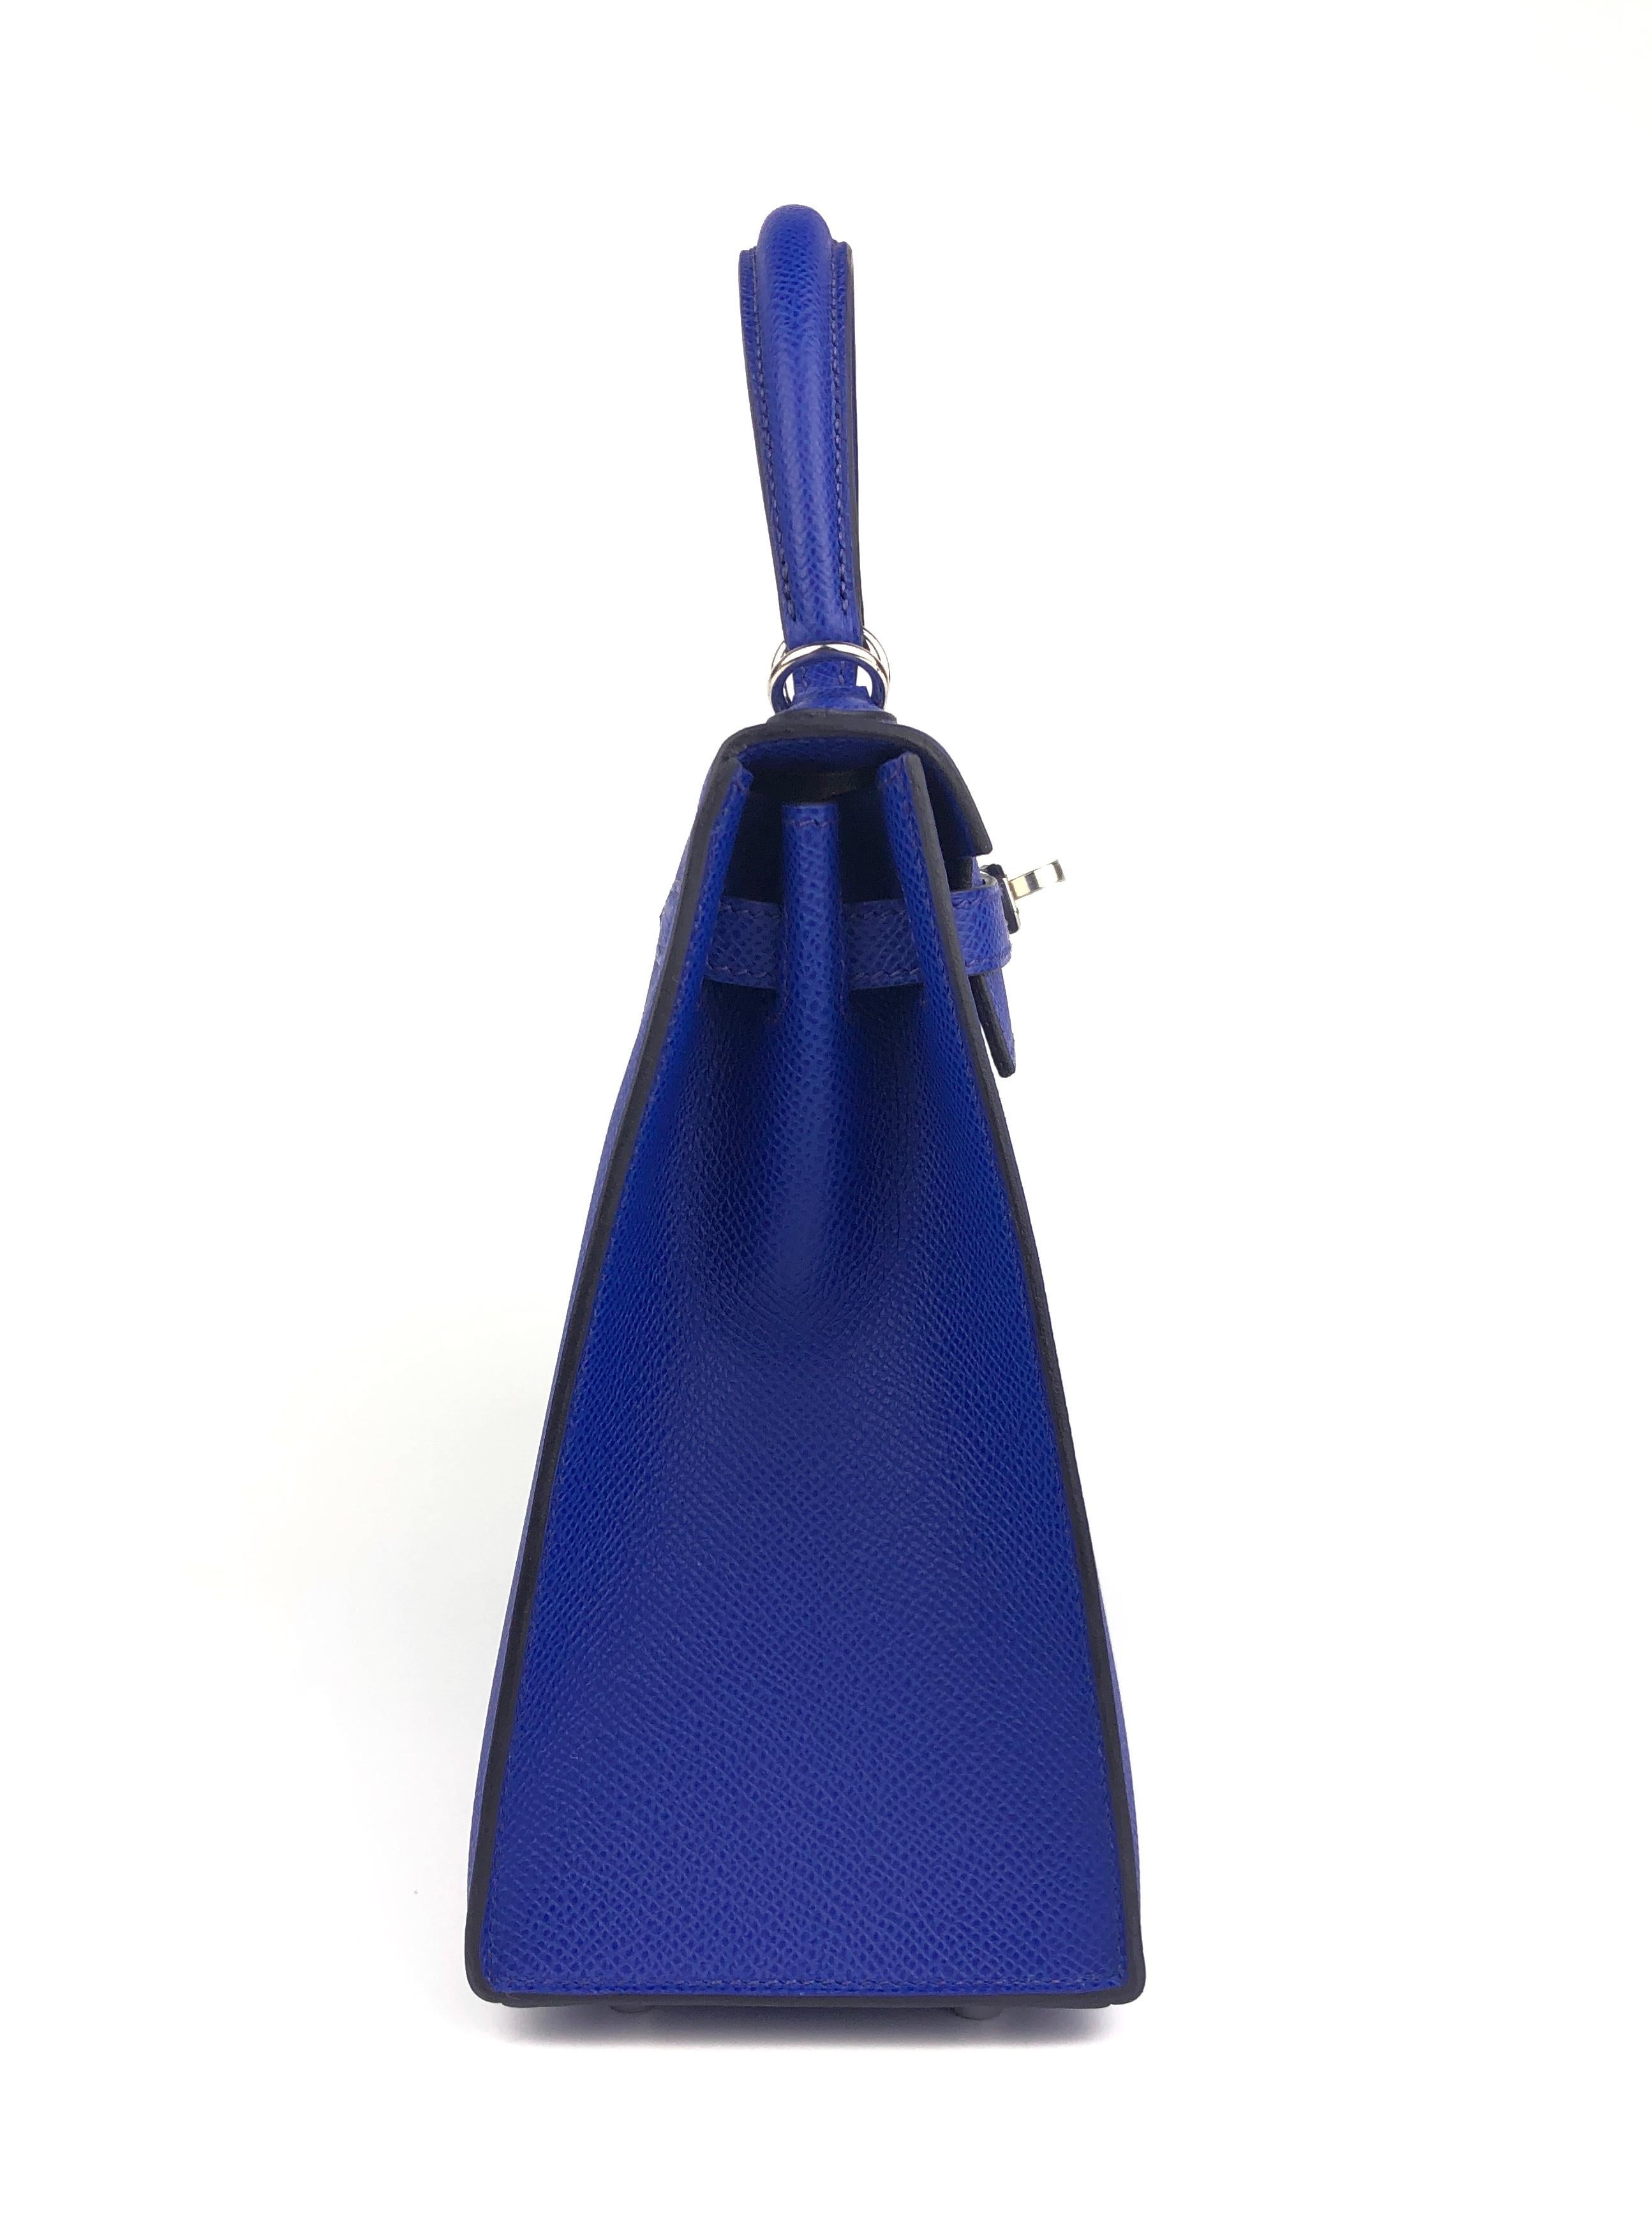 Hermes Kelly 25 Blue Bleu Royal Sellier Shoulder Bag Palladium Hardware 2022 NEW 2